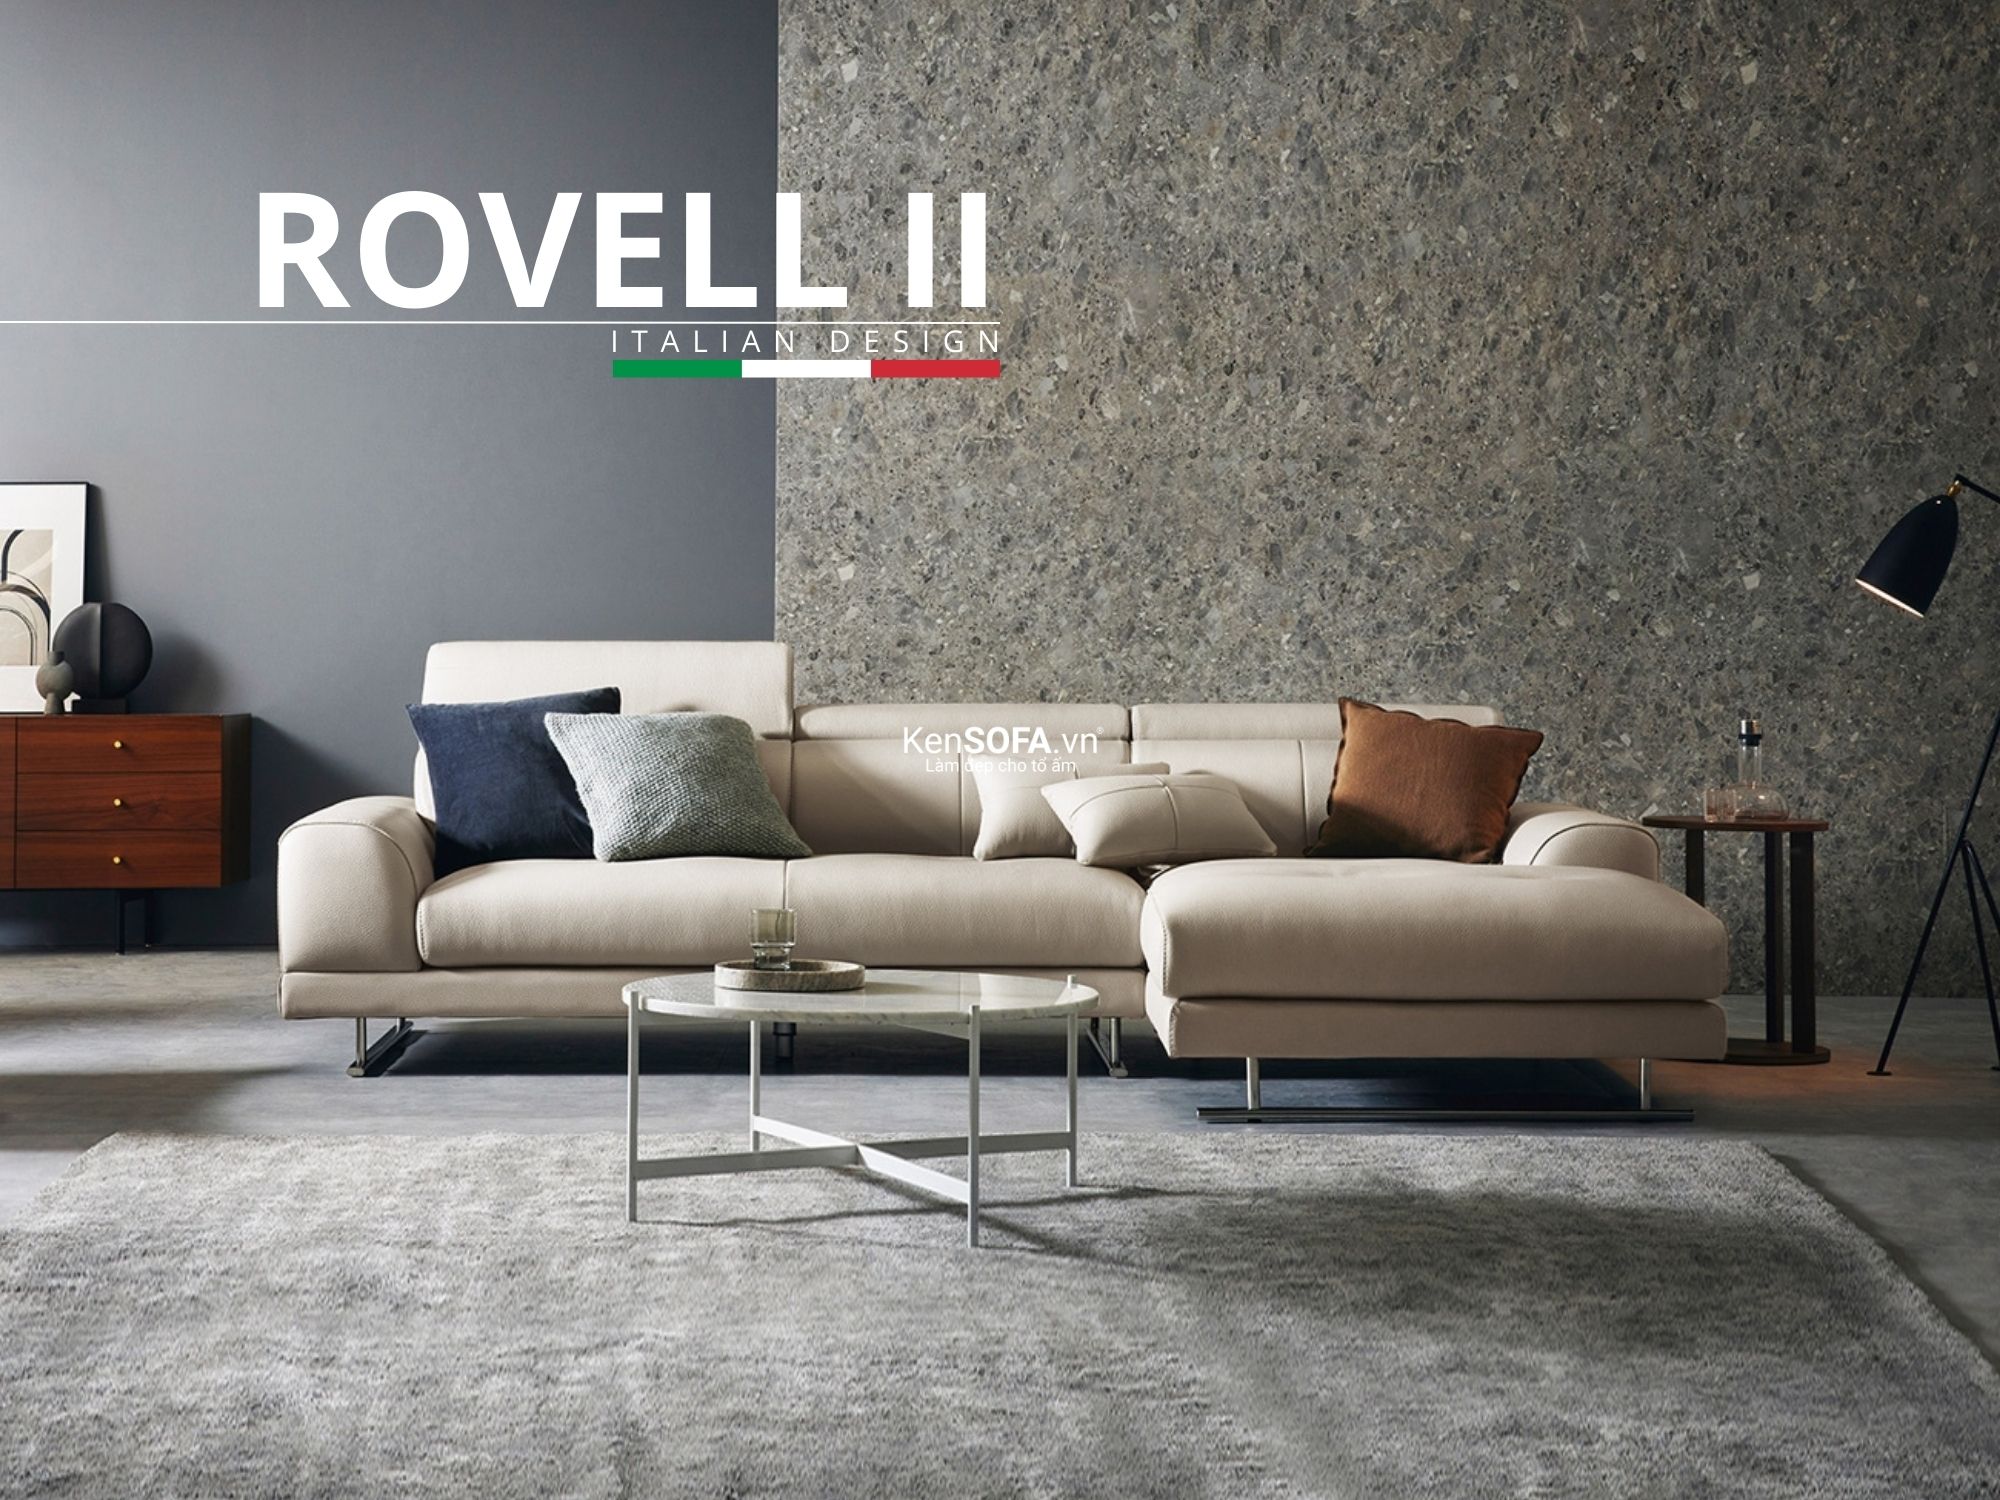 Sofa góc da cao cấp CC77 Rovell II da Hàn Quốc nhập khẩu